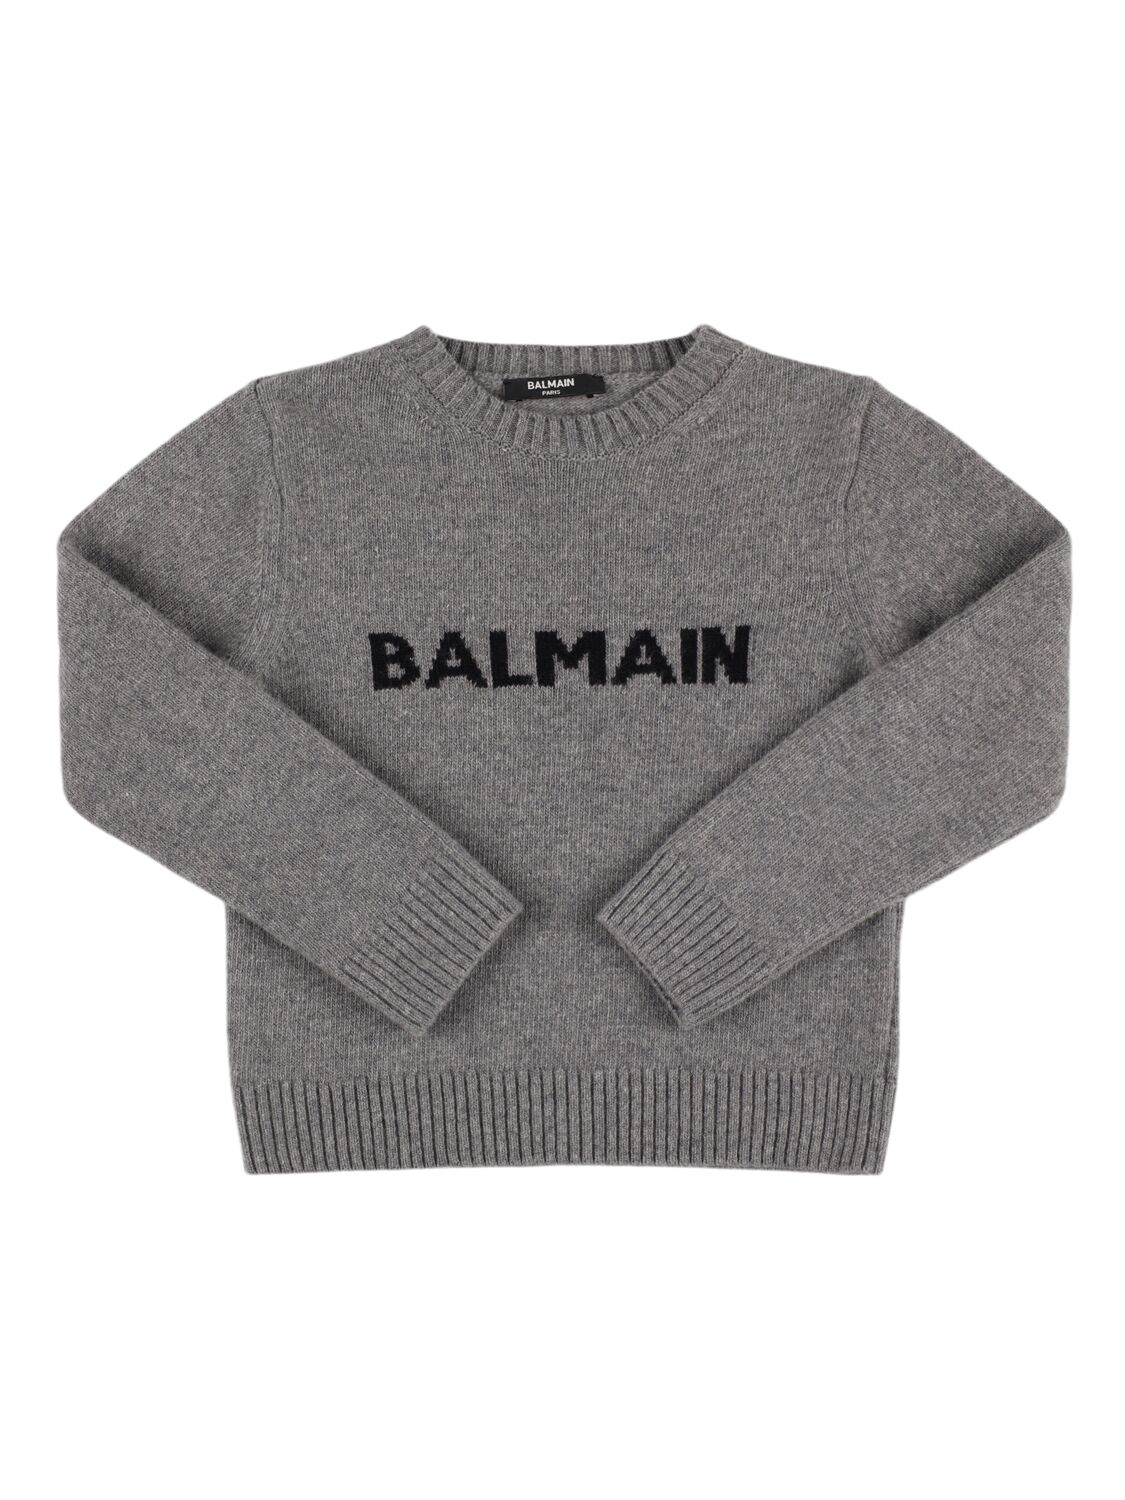 Balmain Wool Blend Knit Sweater In Grey/black